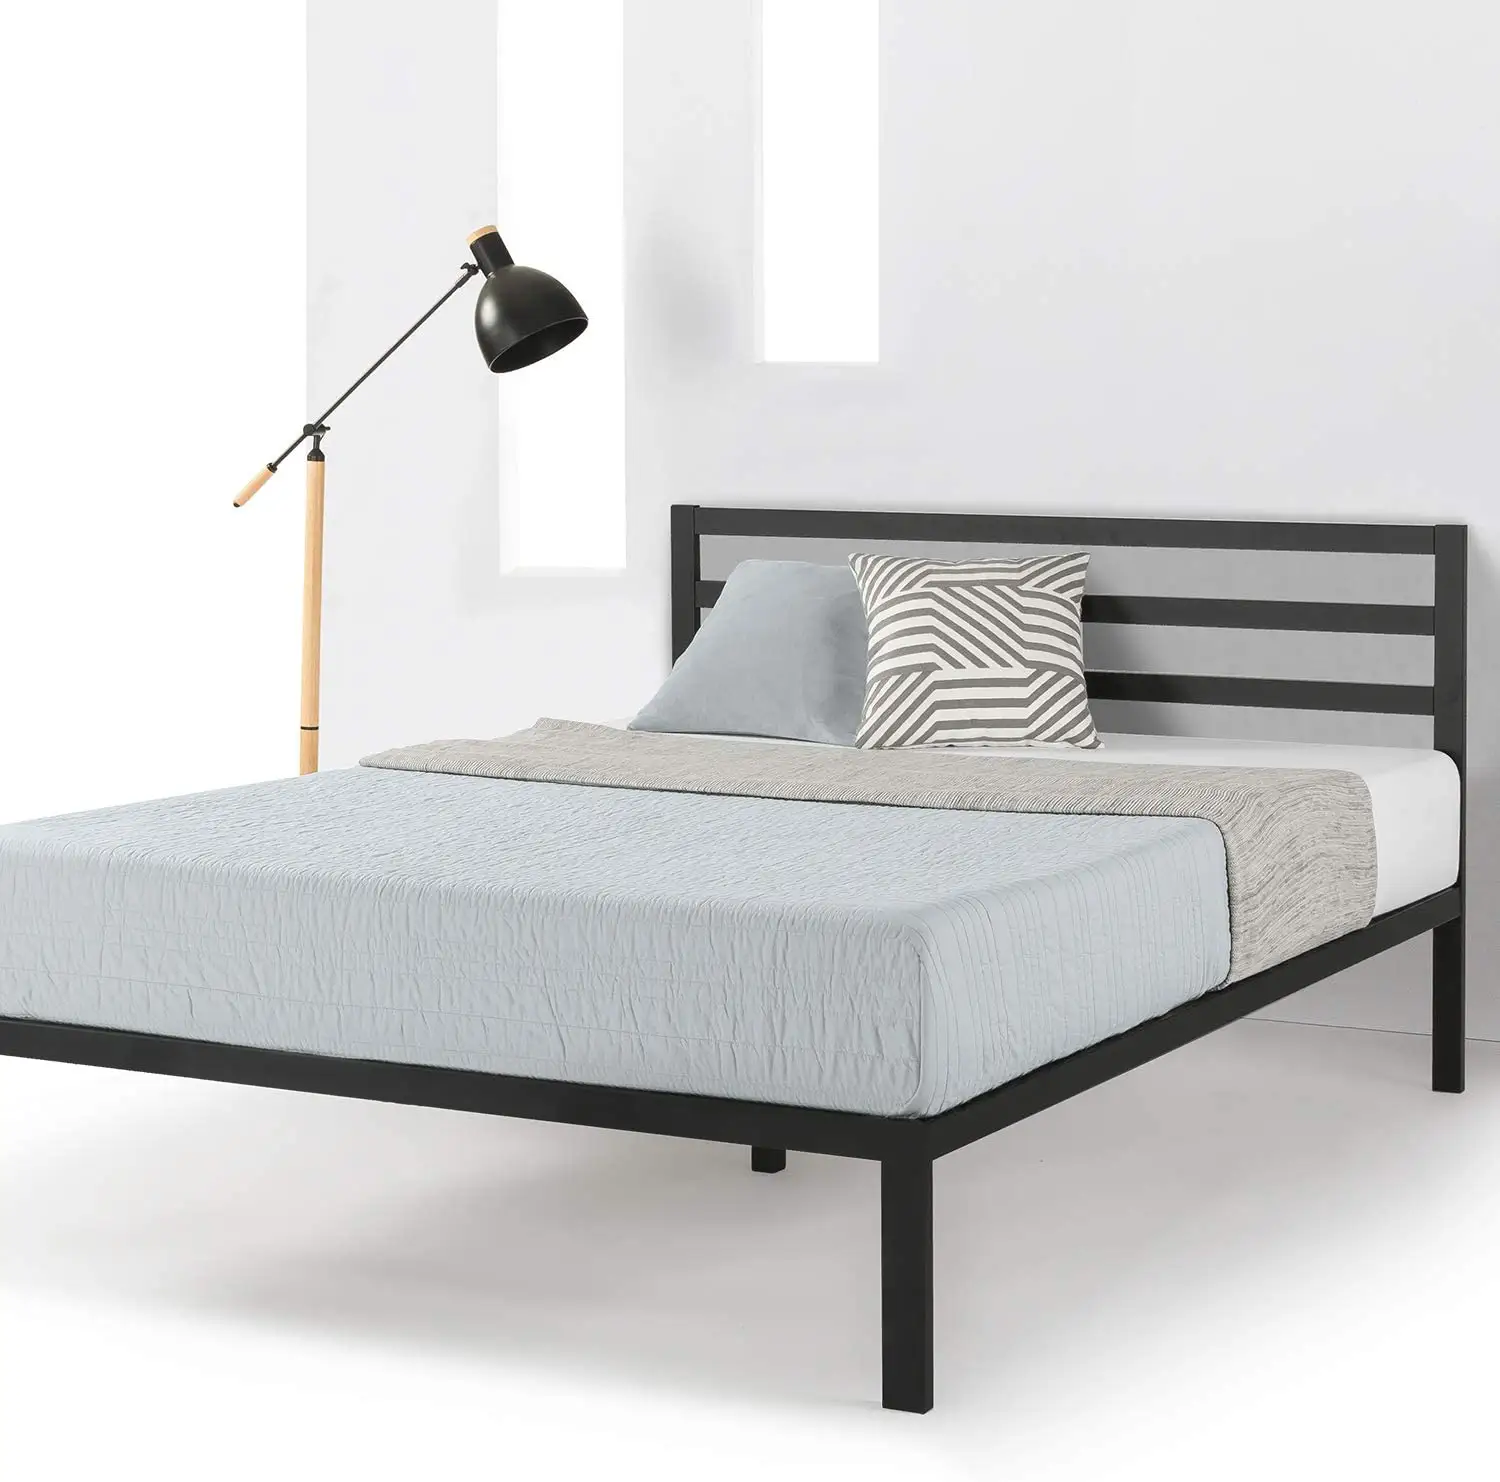 Mellow 14 inç ağır Metal Platform yatağı çerçeve kraliçe ferforje Logo siyah çerçeveler ile Modern ev yatak Metal yatak